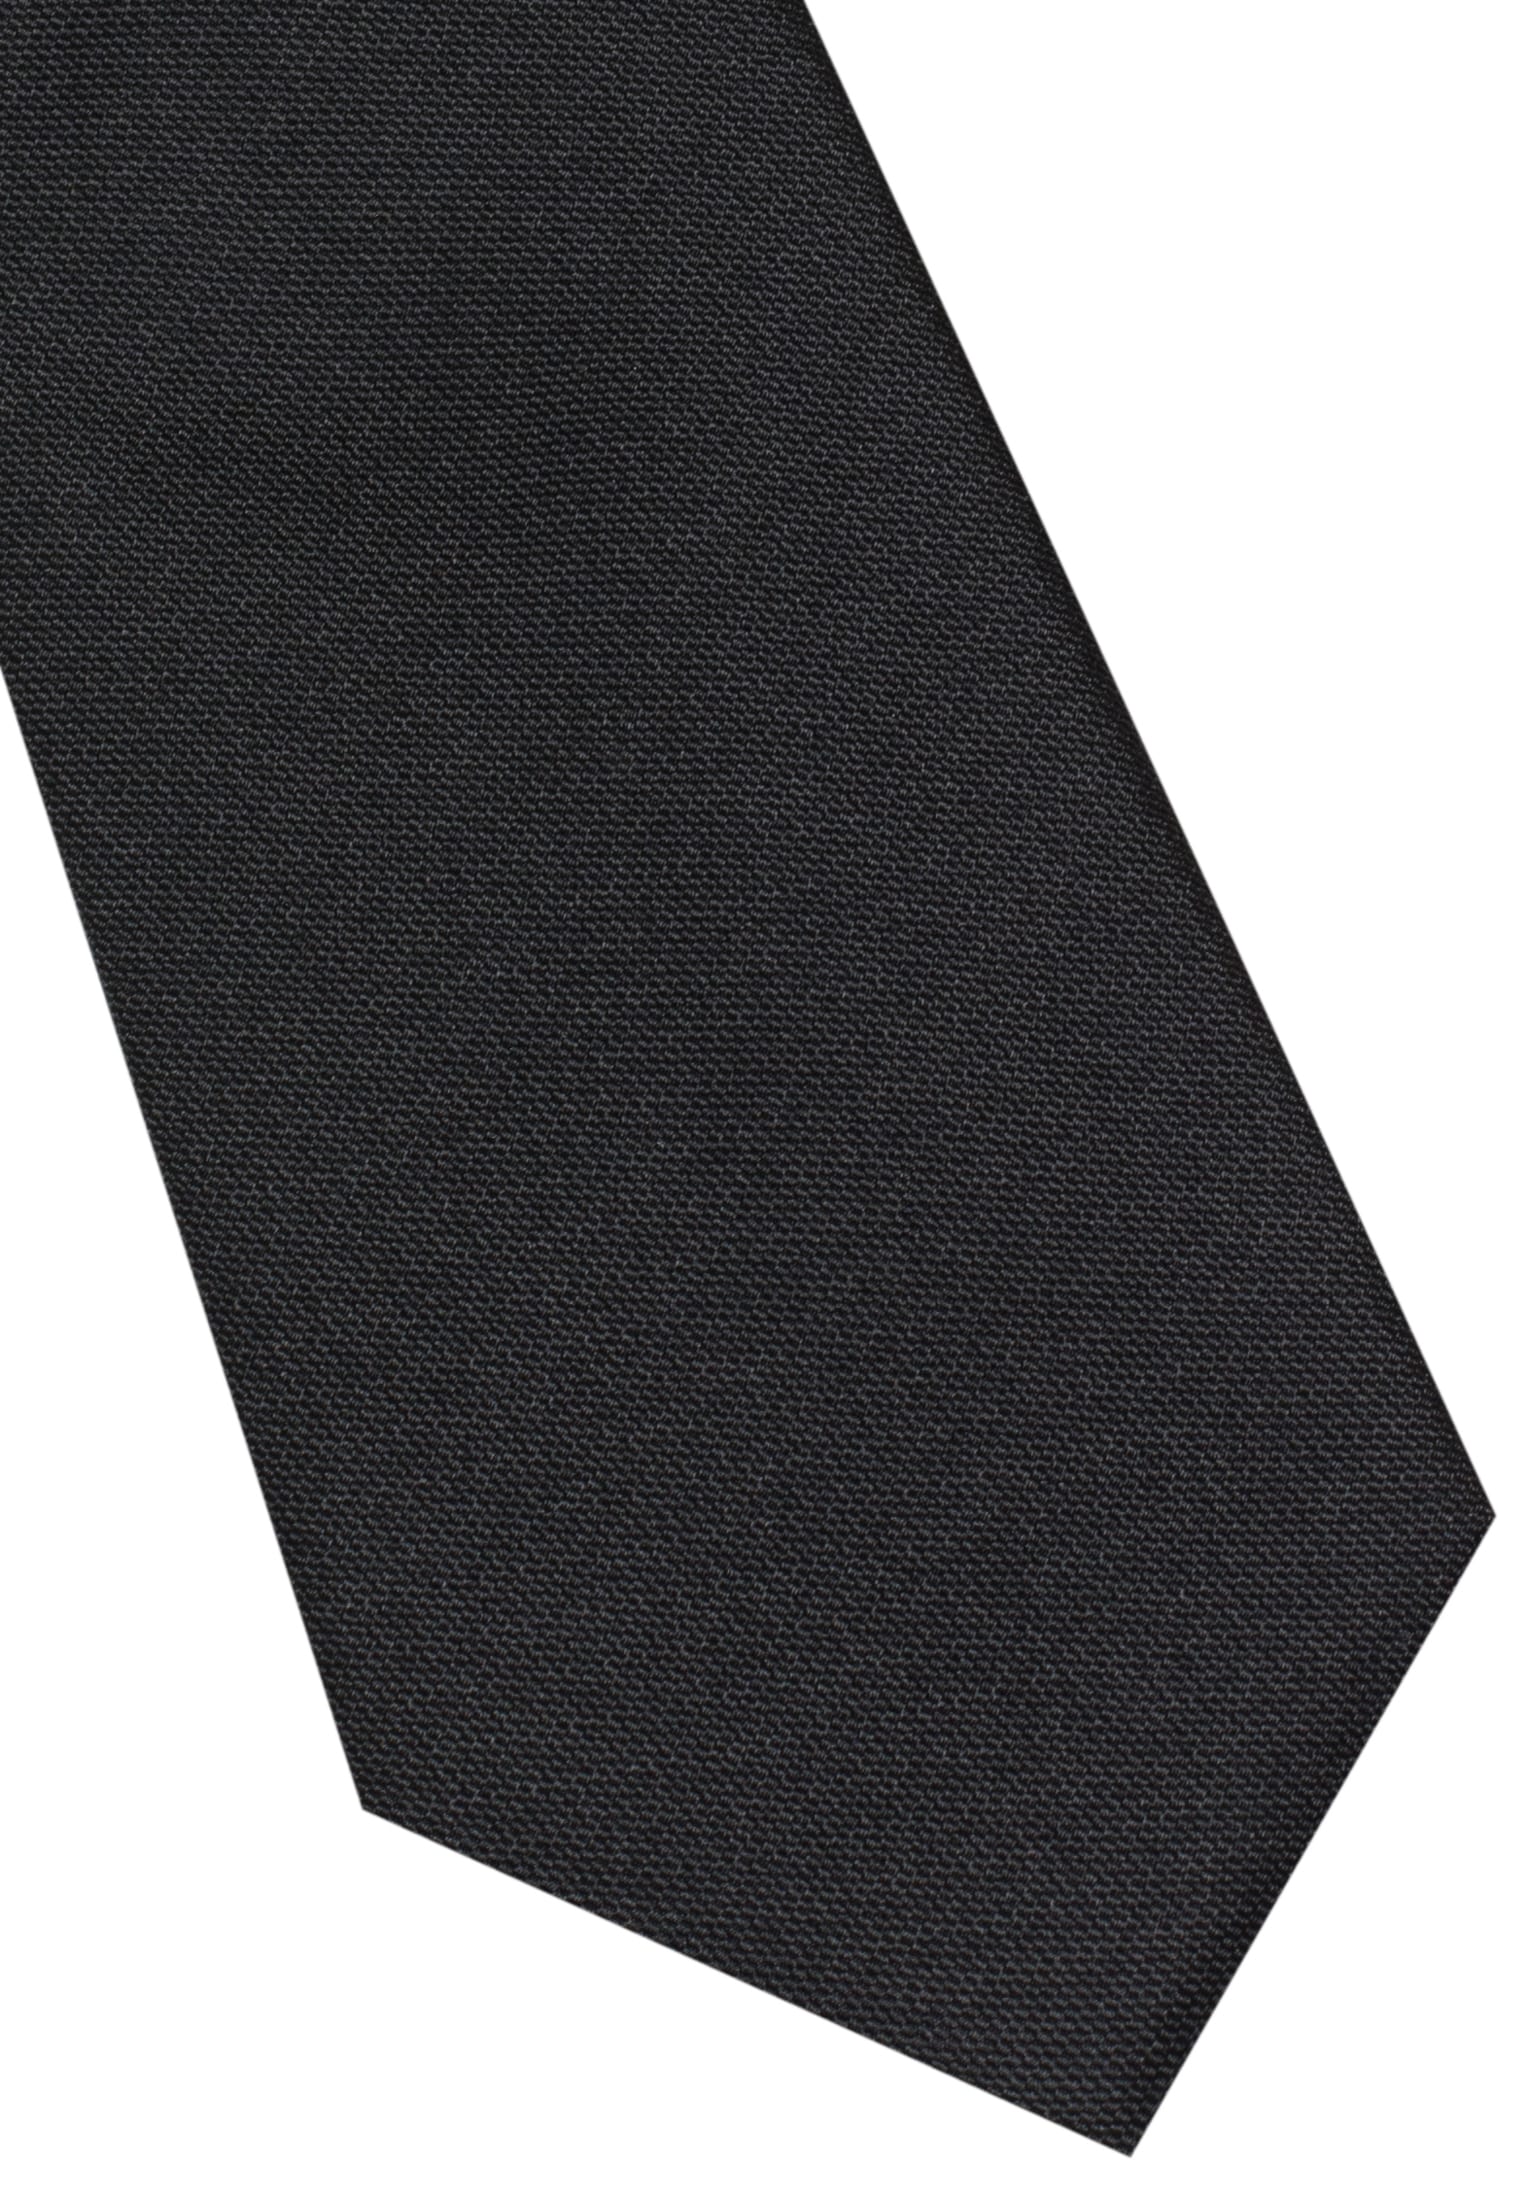 Krawatte in schwarz unifarben